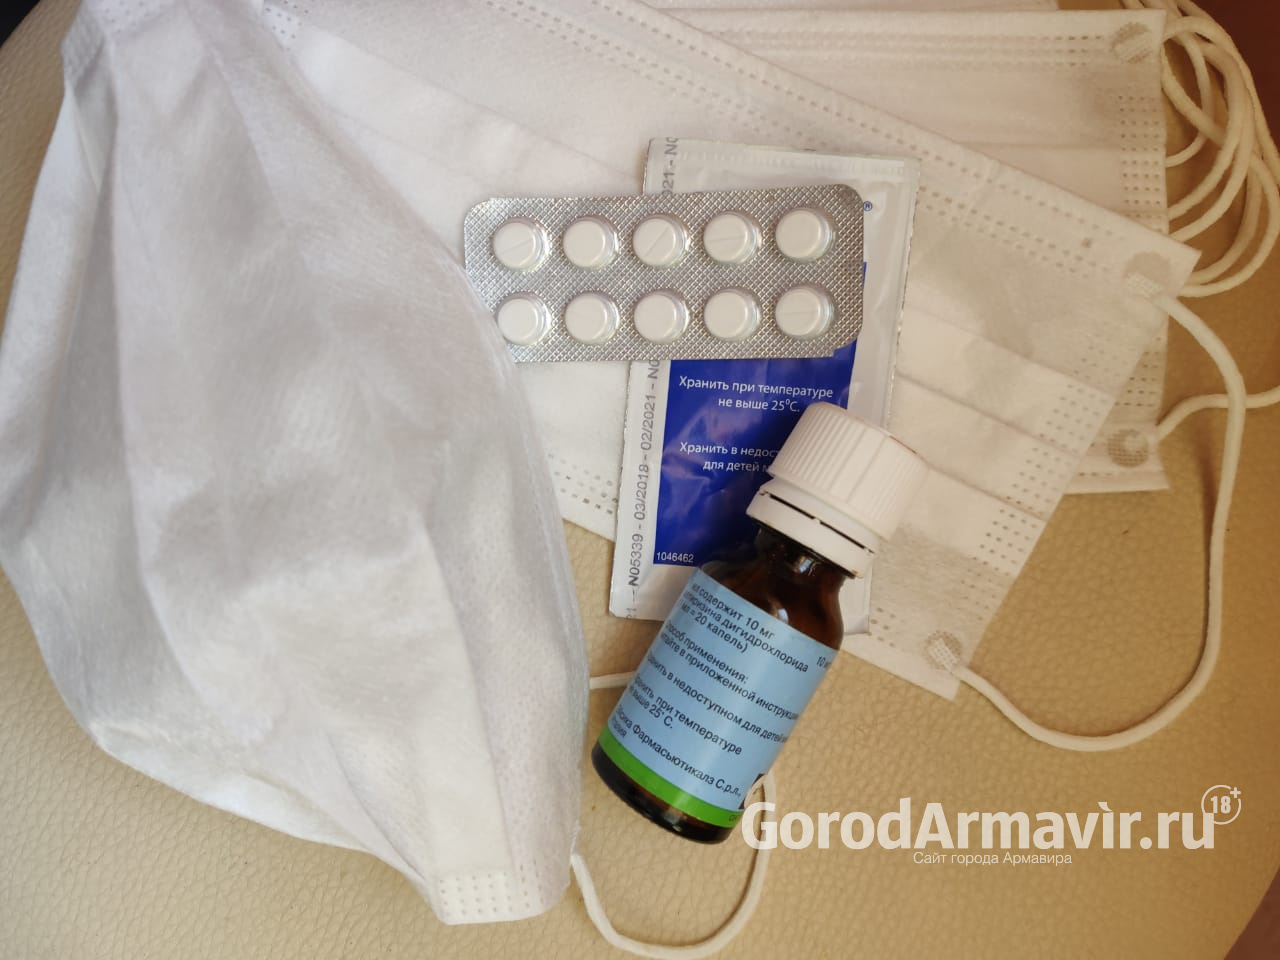 По данным на 30 мая еще 2 человека заболели коронавирусом в Армавире 